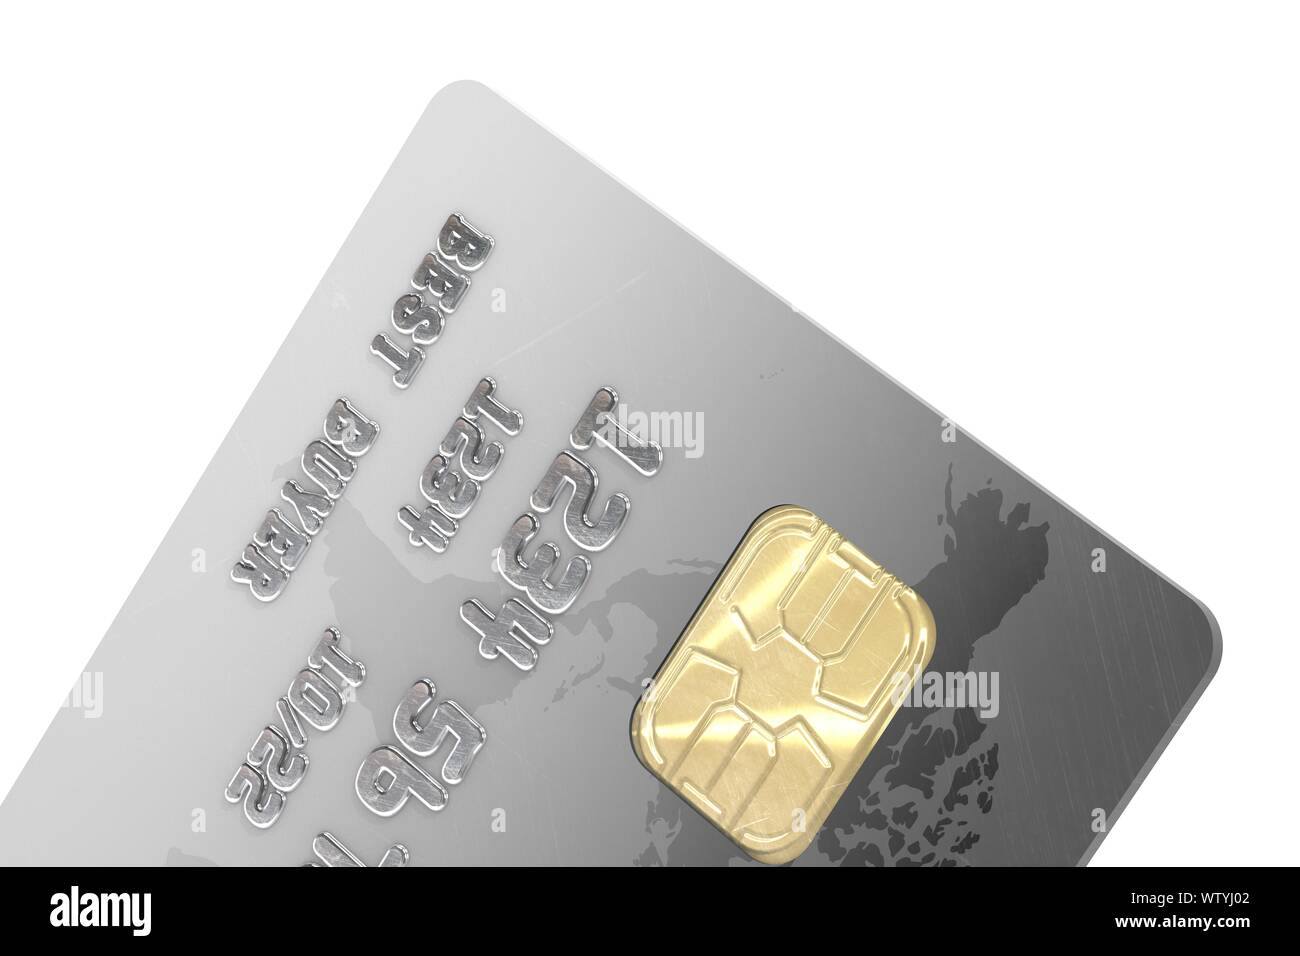 3D-Illustration: Teil der Kreditkarte mit einem elektronischen Chip ohne Angabe der Marke und die Namen der Banken mit Weltkarte grau-schwarze Farbe. Stockfoto